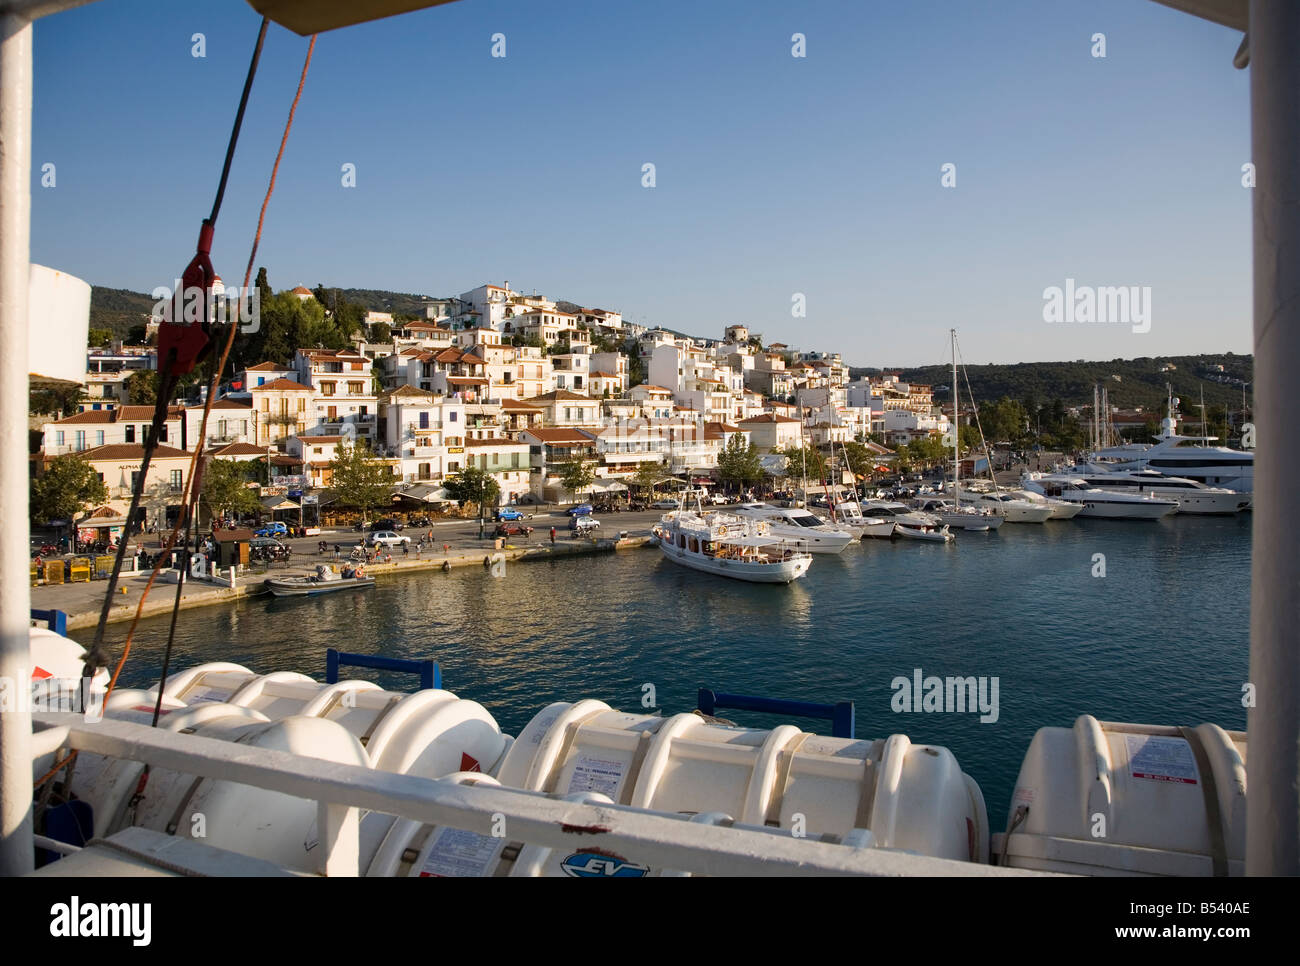 Puerto de la isla de Skiathos Grecia Europa mar Egeo, elevada vista desde el barco. Foto de stock